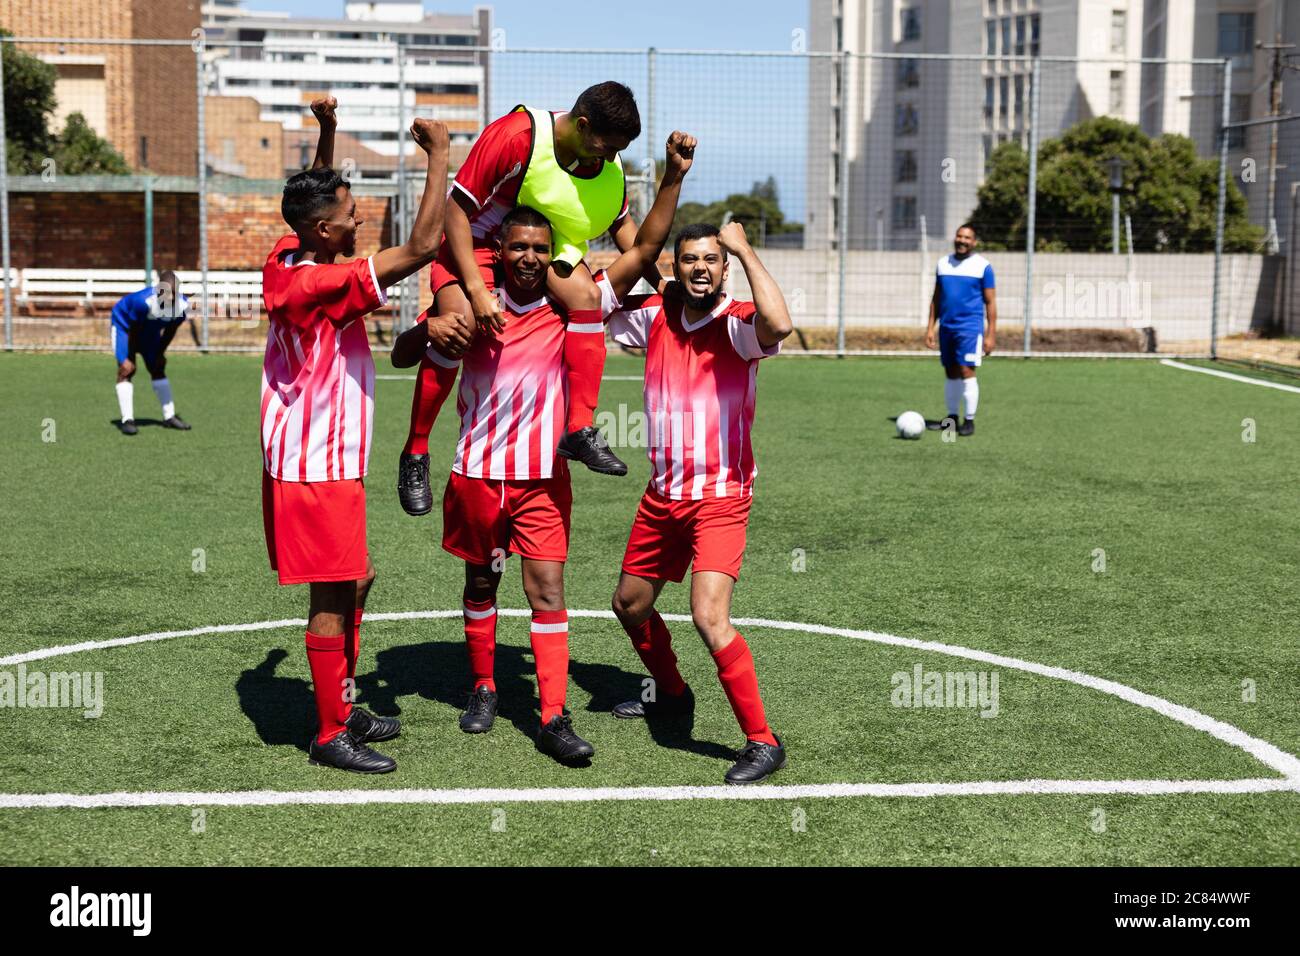 Deux équipes multiethniques de joueurs de football masculin de cinq a côté portant une bande d'équipe jouant un match sur un terrain de sport au soleil, célébrant Victory carr Banque D'Images